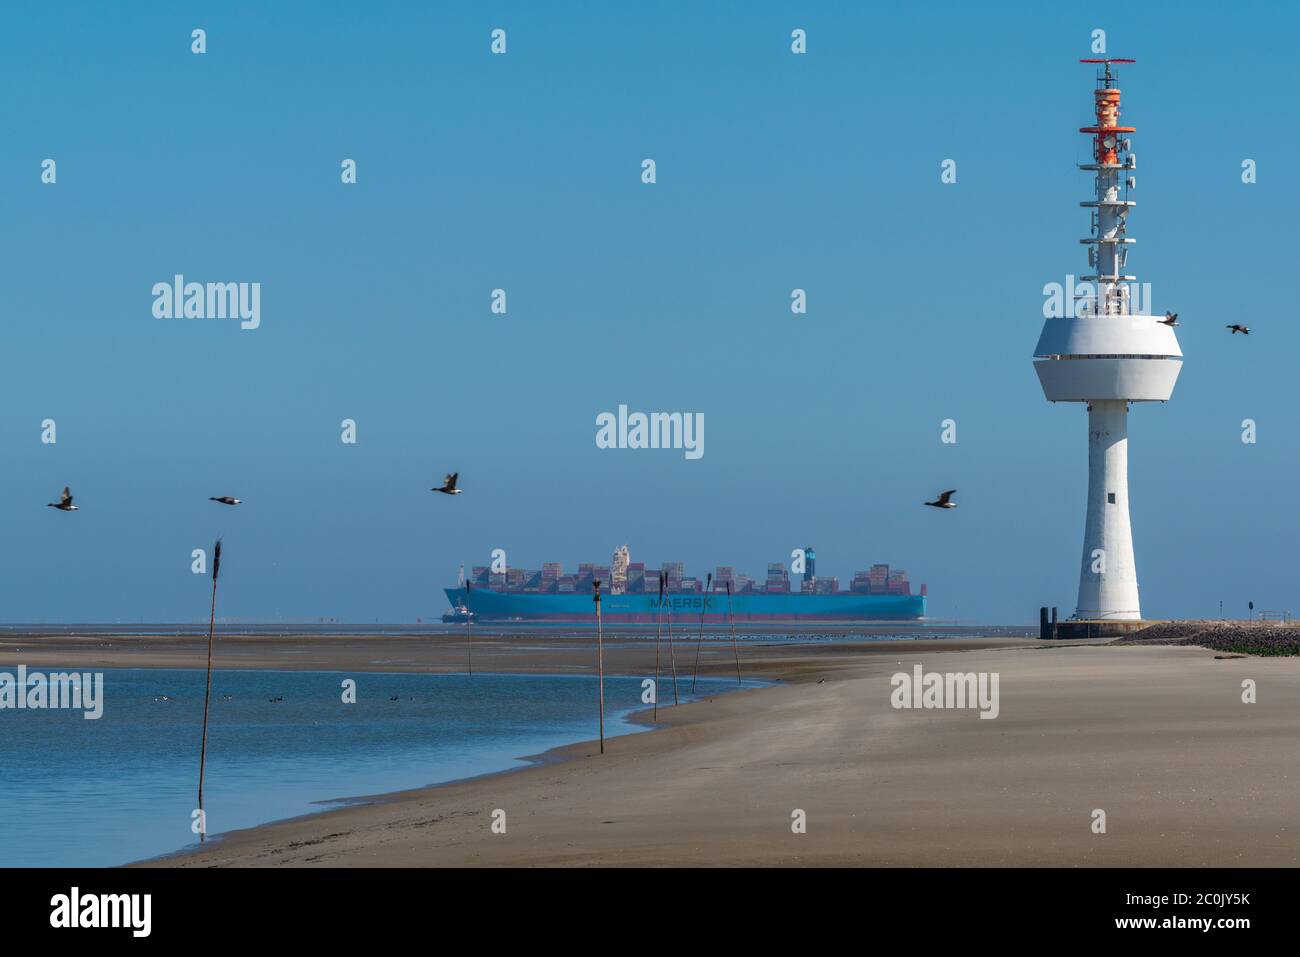 Radarturm auf der Nordseeinsel Neuwerk, Waddensea, UNESCO Weltkulturerbe, Bundesland Hamburg, Deutschland, Europa Stockfoto